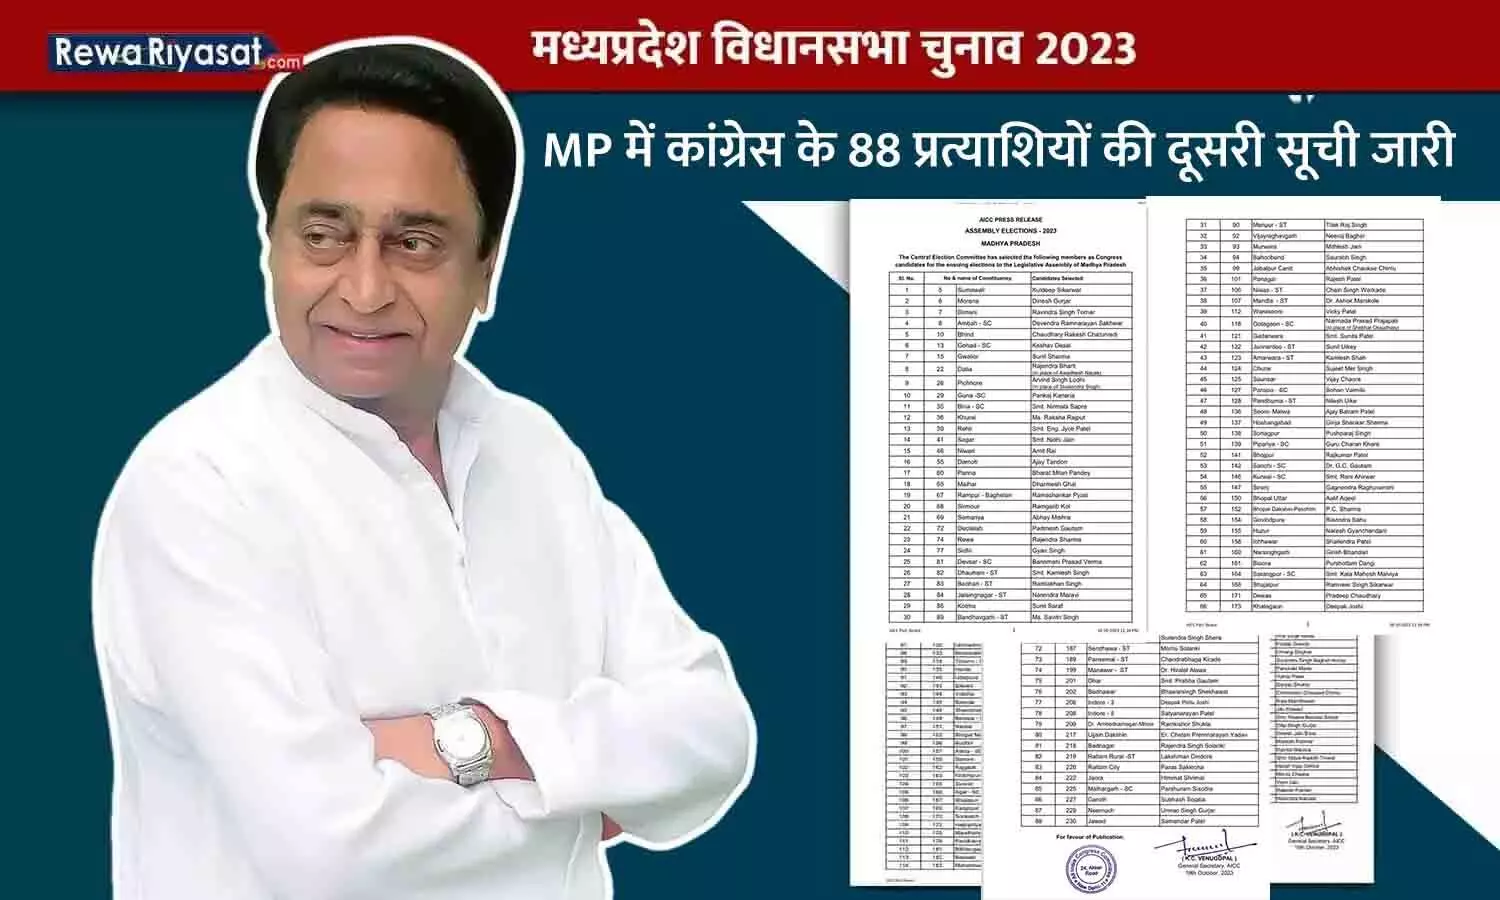 MP में कांग्रेस के 88 प्रत्याशियों की दूसरी सूची जारी: सेमरिया से अभय मिश्रा को टिकट, गोटगांव, पिछोर और दतिया का प्रत्याशी बदला